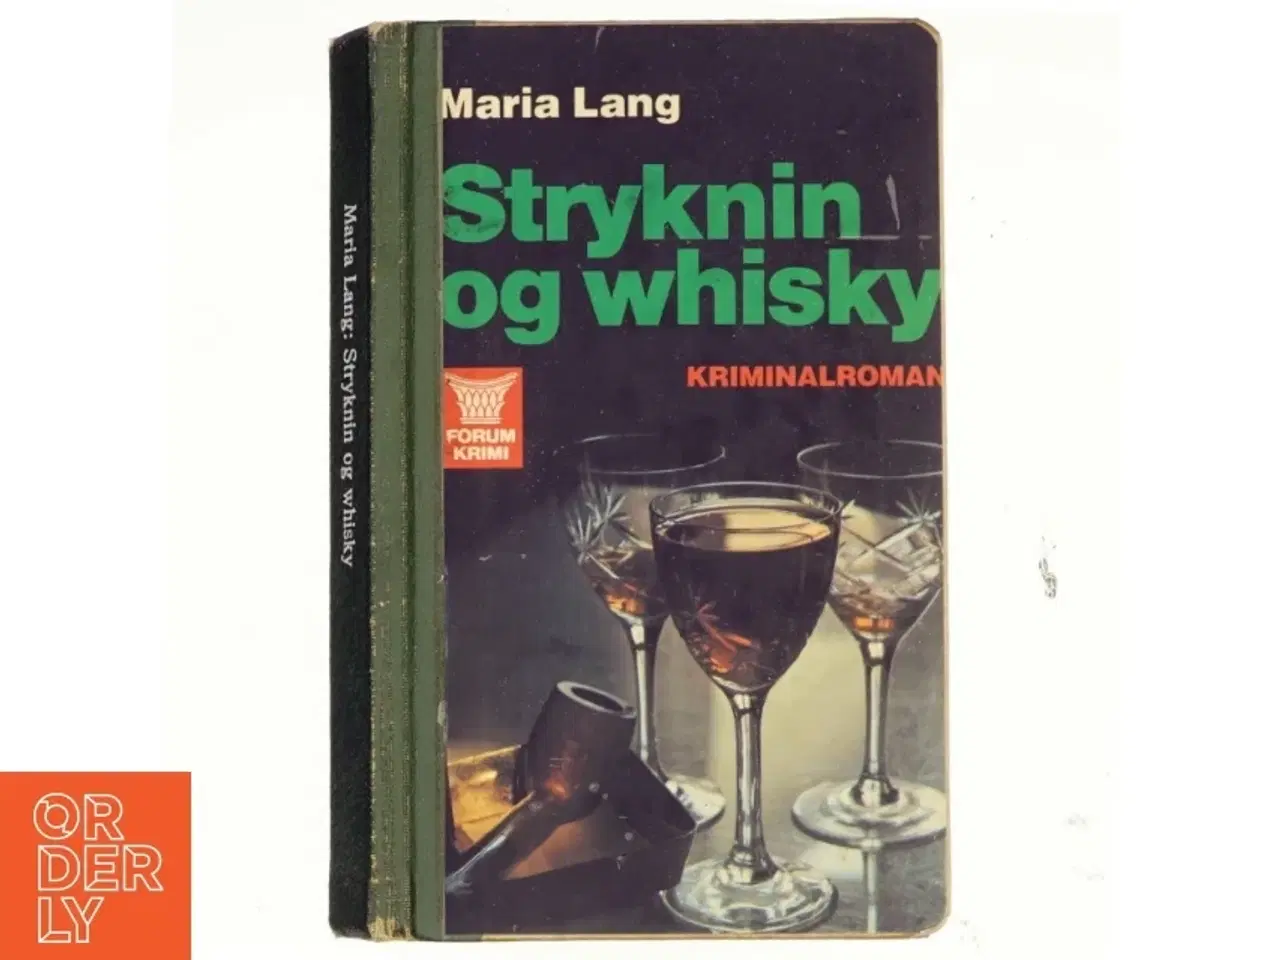 Billede 1 - Maria Lang, Stryknin og whiskey